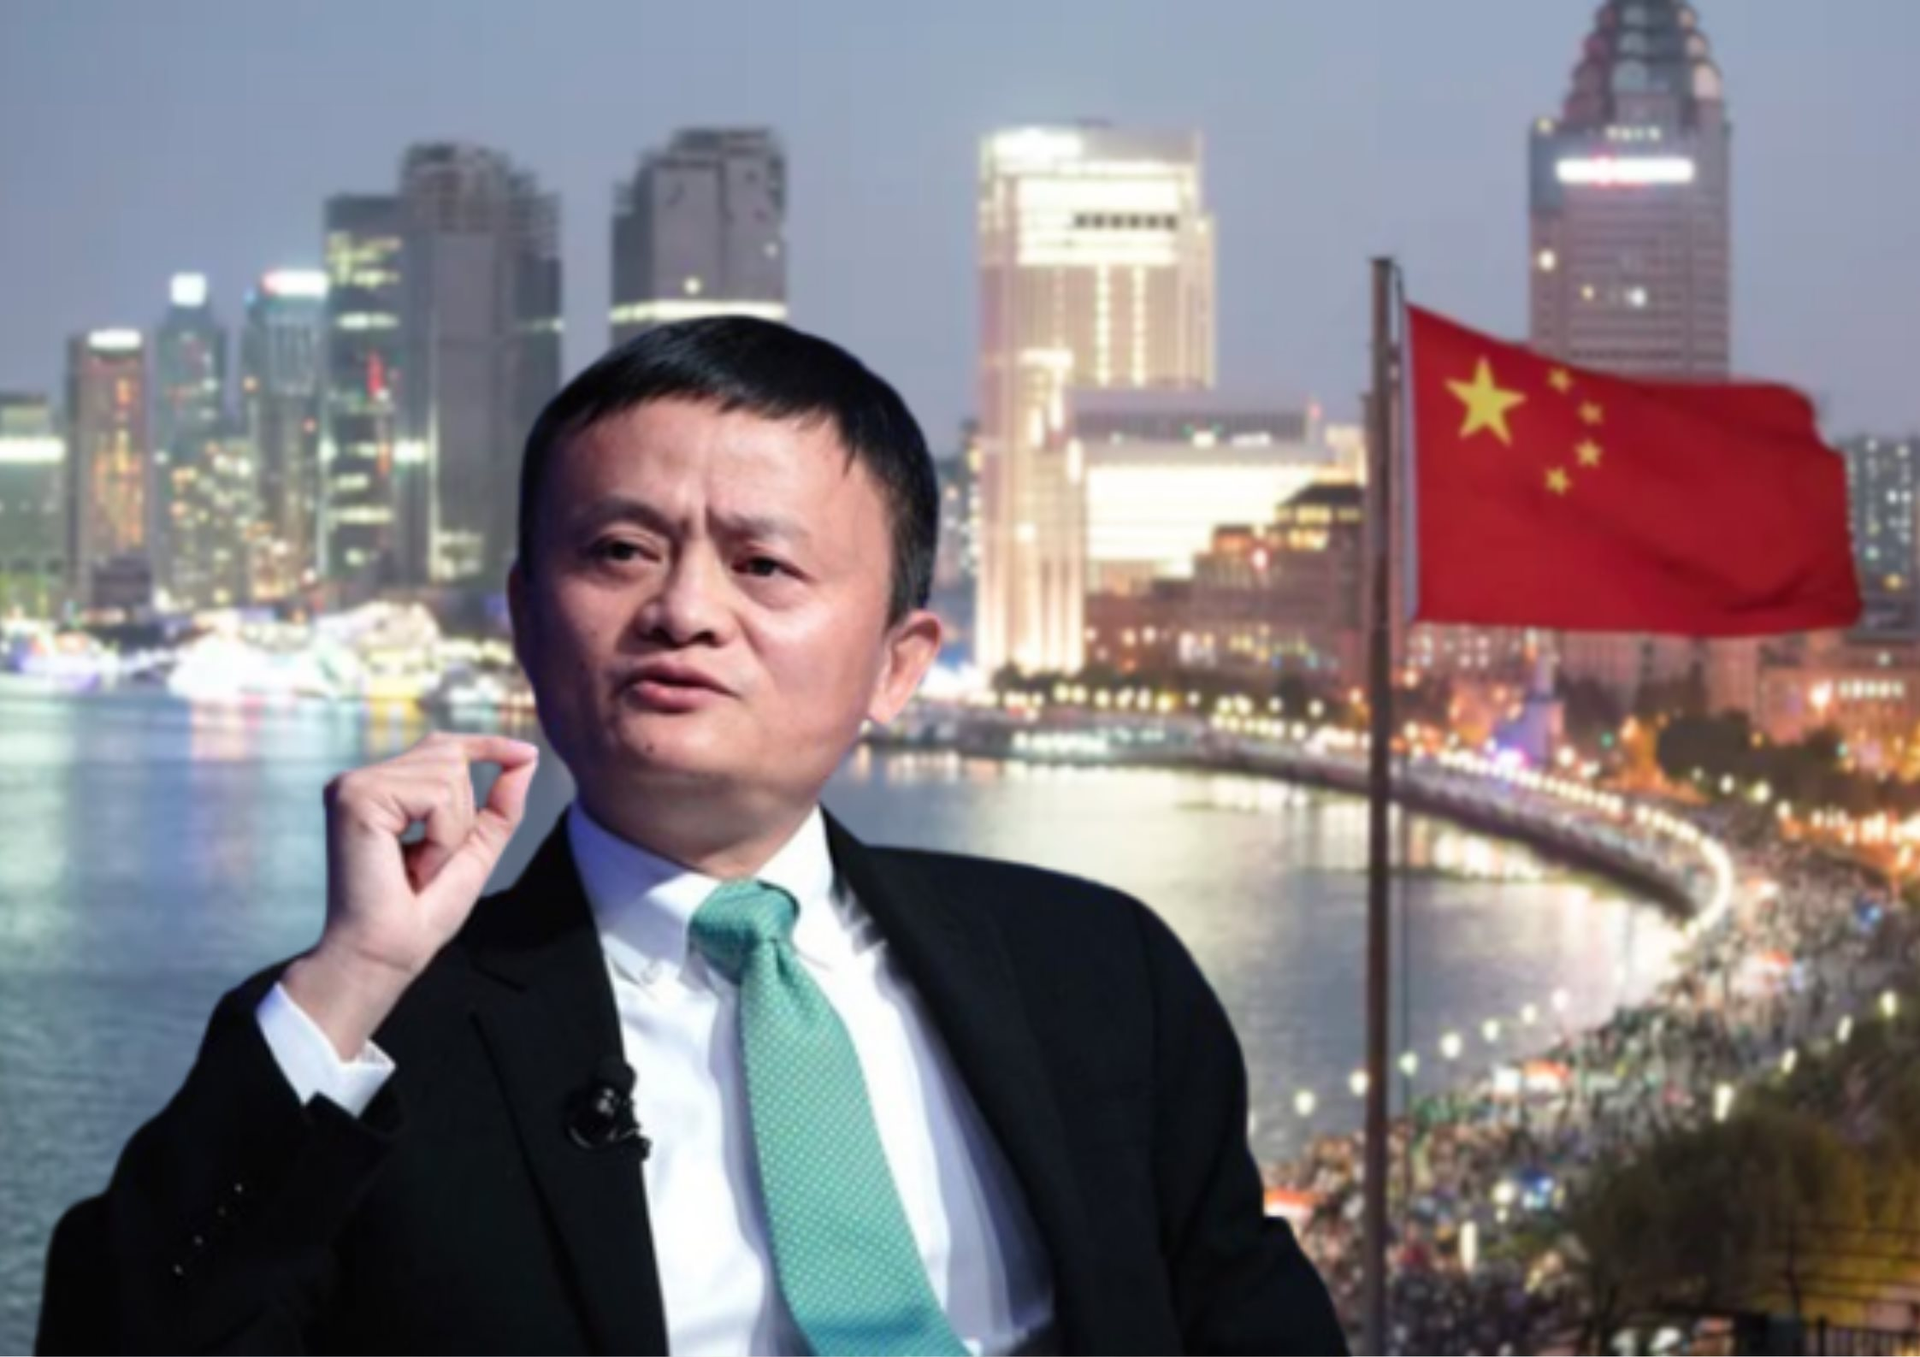 Ngôi sao mới nổi, đe dọa vị thế của Alibaba đến nỗi Jack Ma phải "sốt sắng" lên tiếng sau 3 năm im lặng đang làm ăn ra sao? - Ảnh 1.